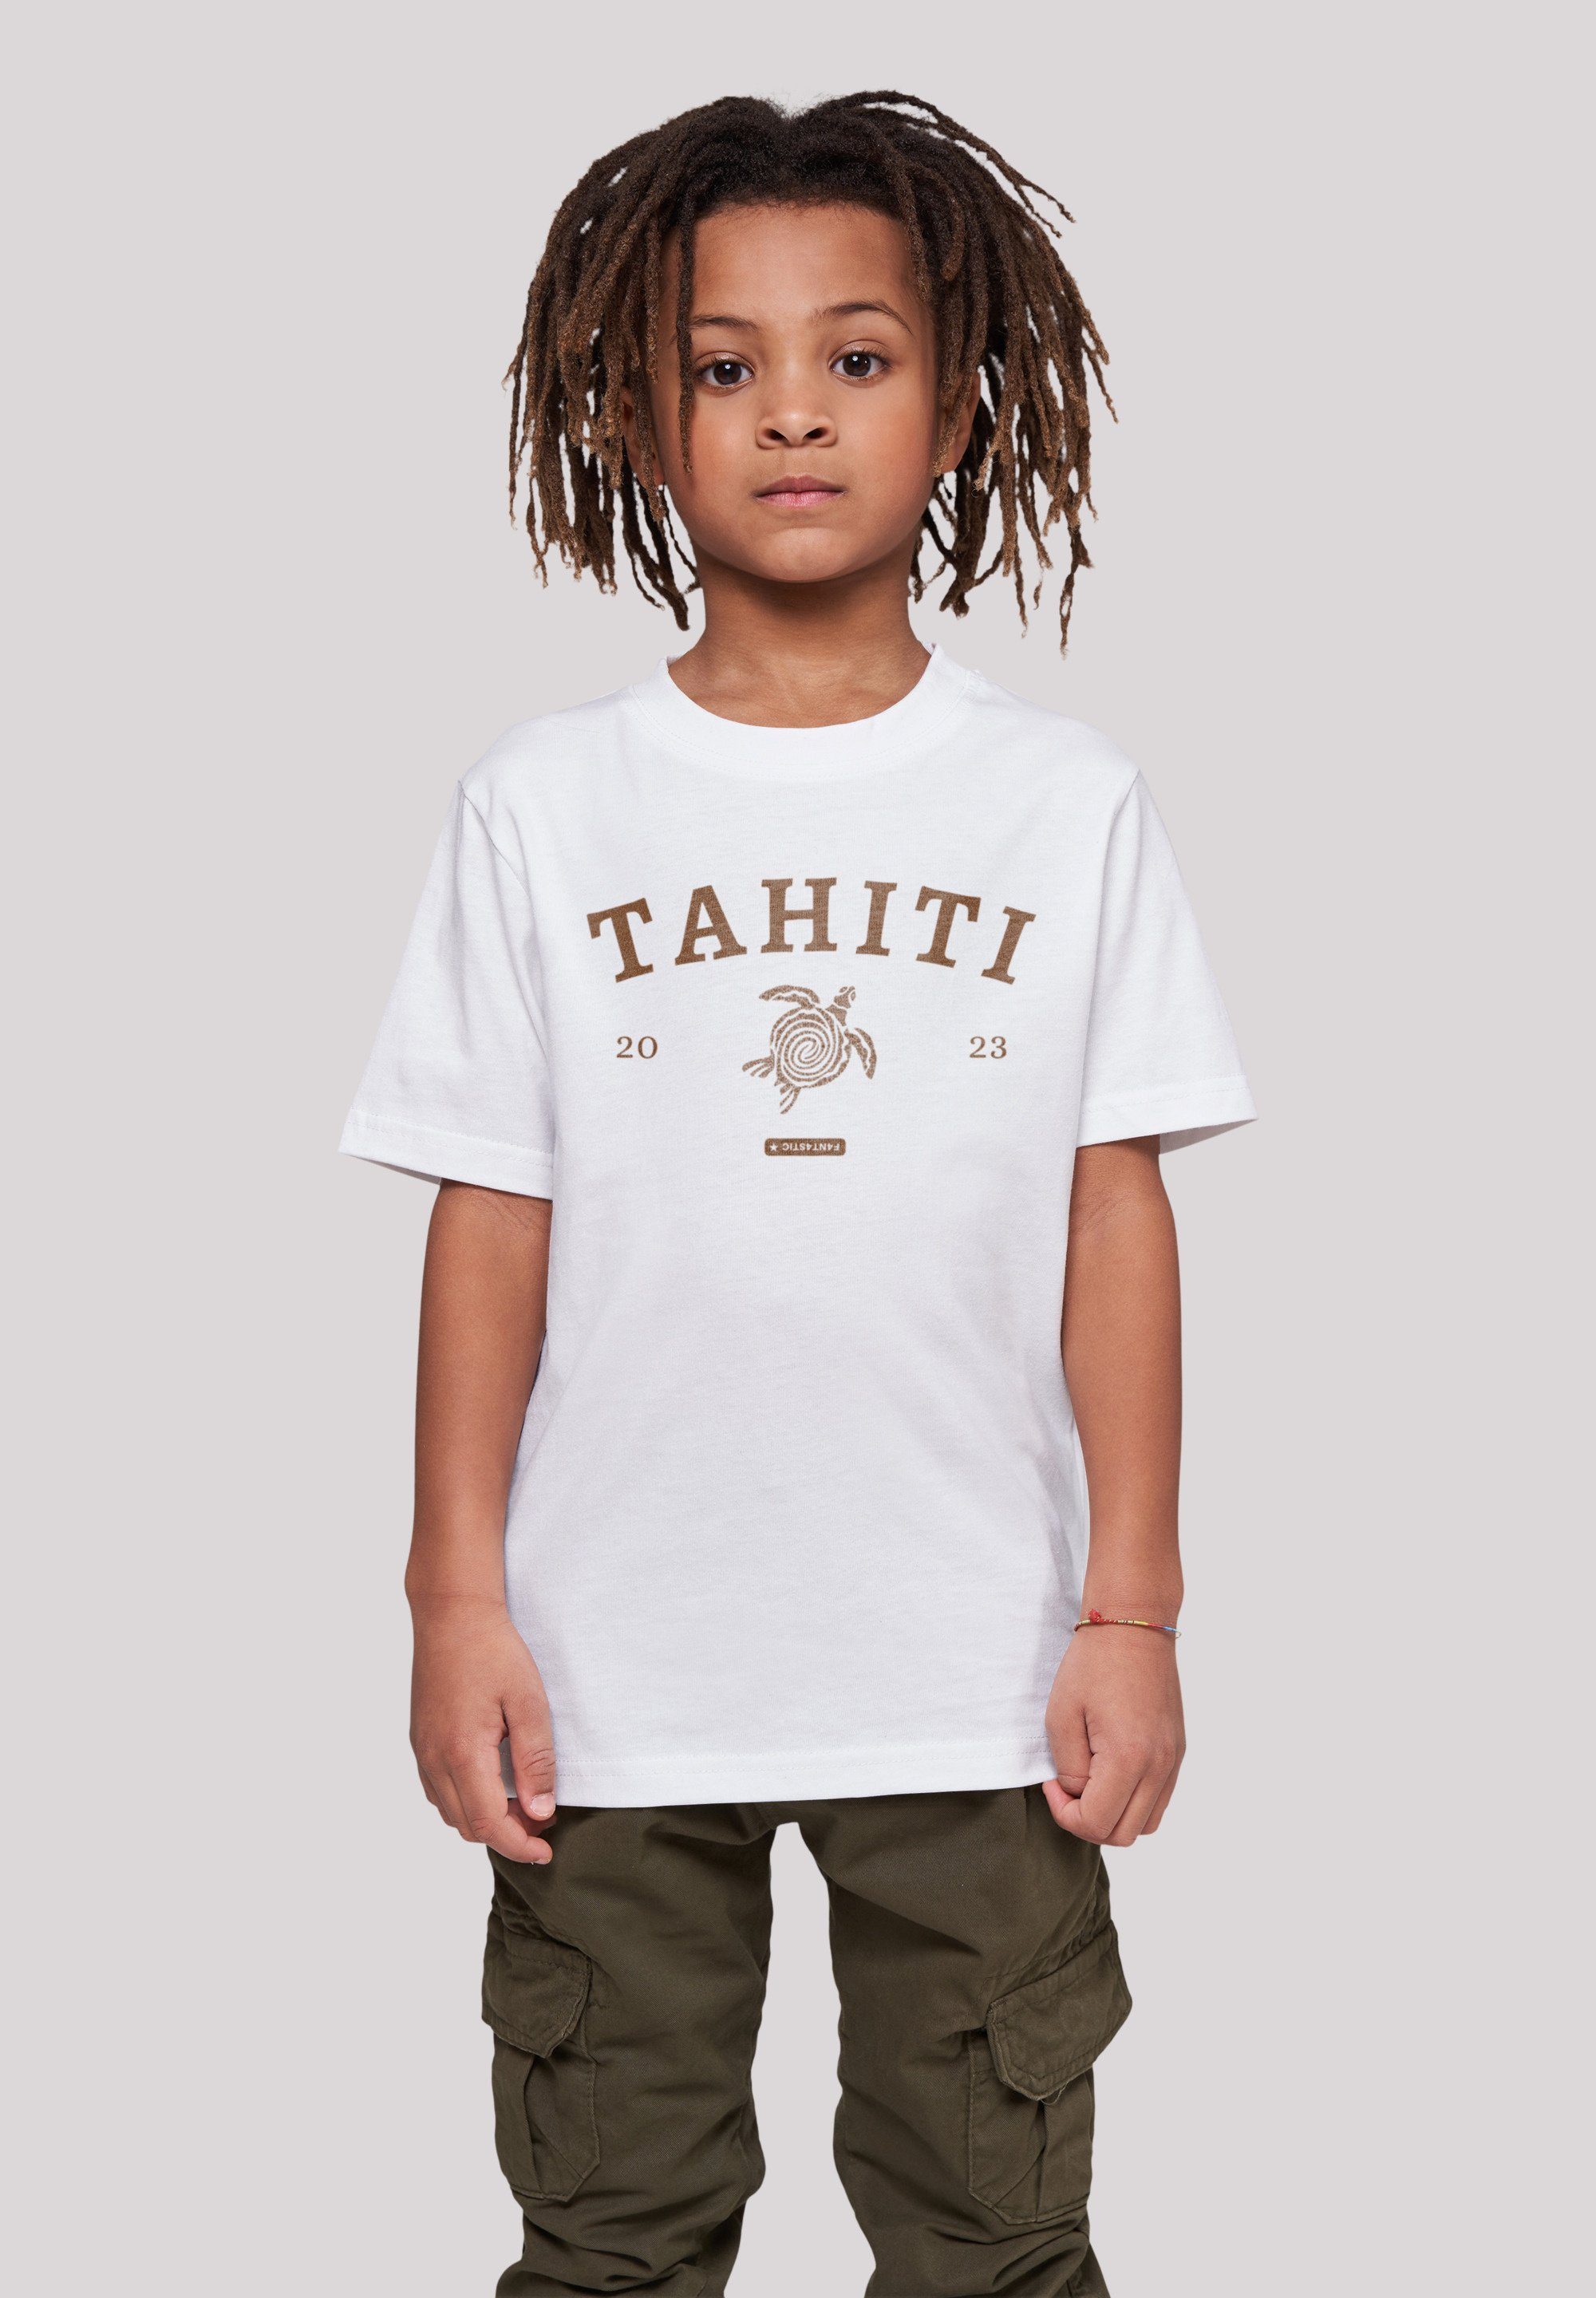 F4NT4STIC Sehr hohem Tahiti Print, Tragekomfort T-Shirt Baumwollstoff mit weicher